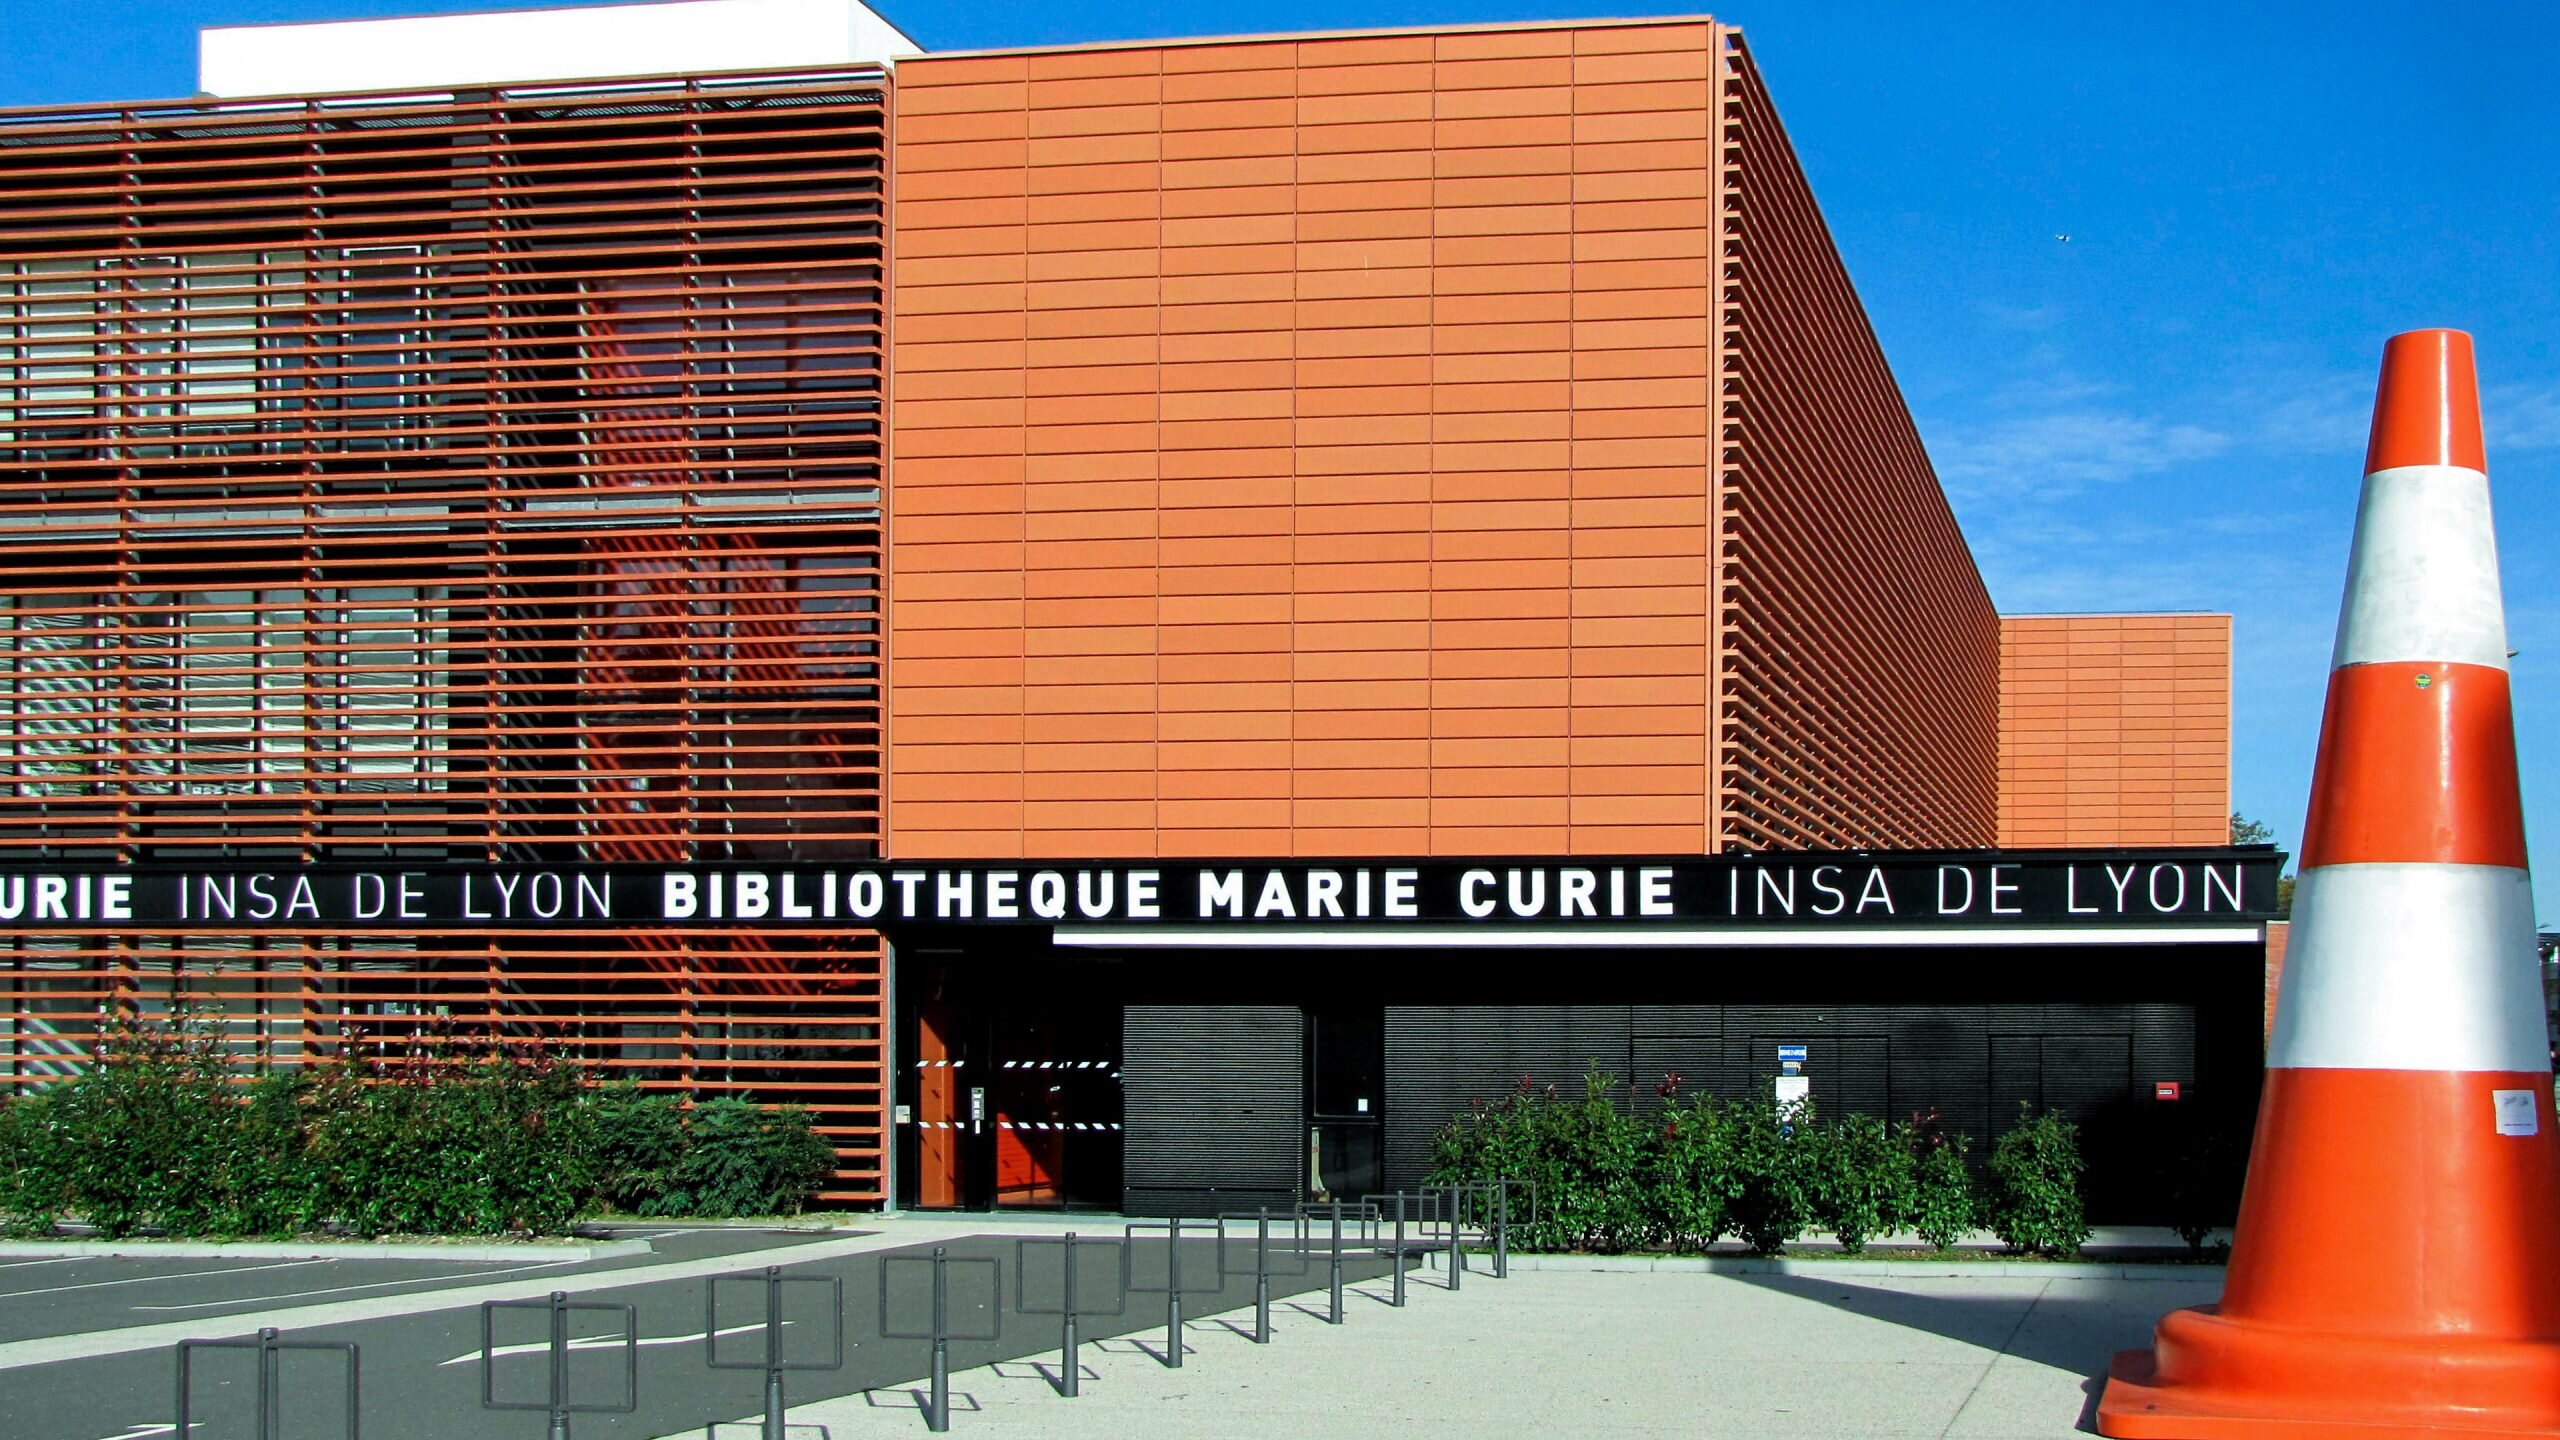 Bibliothèque Marie Curie INSA (2)